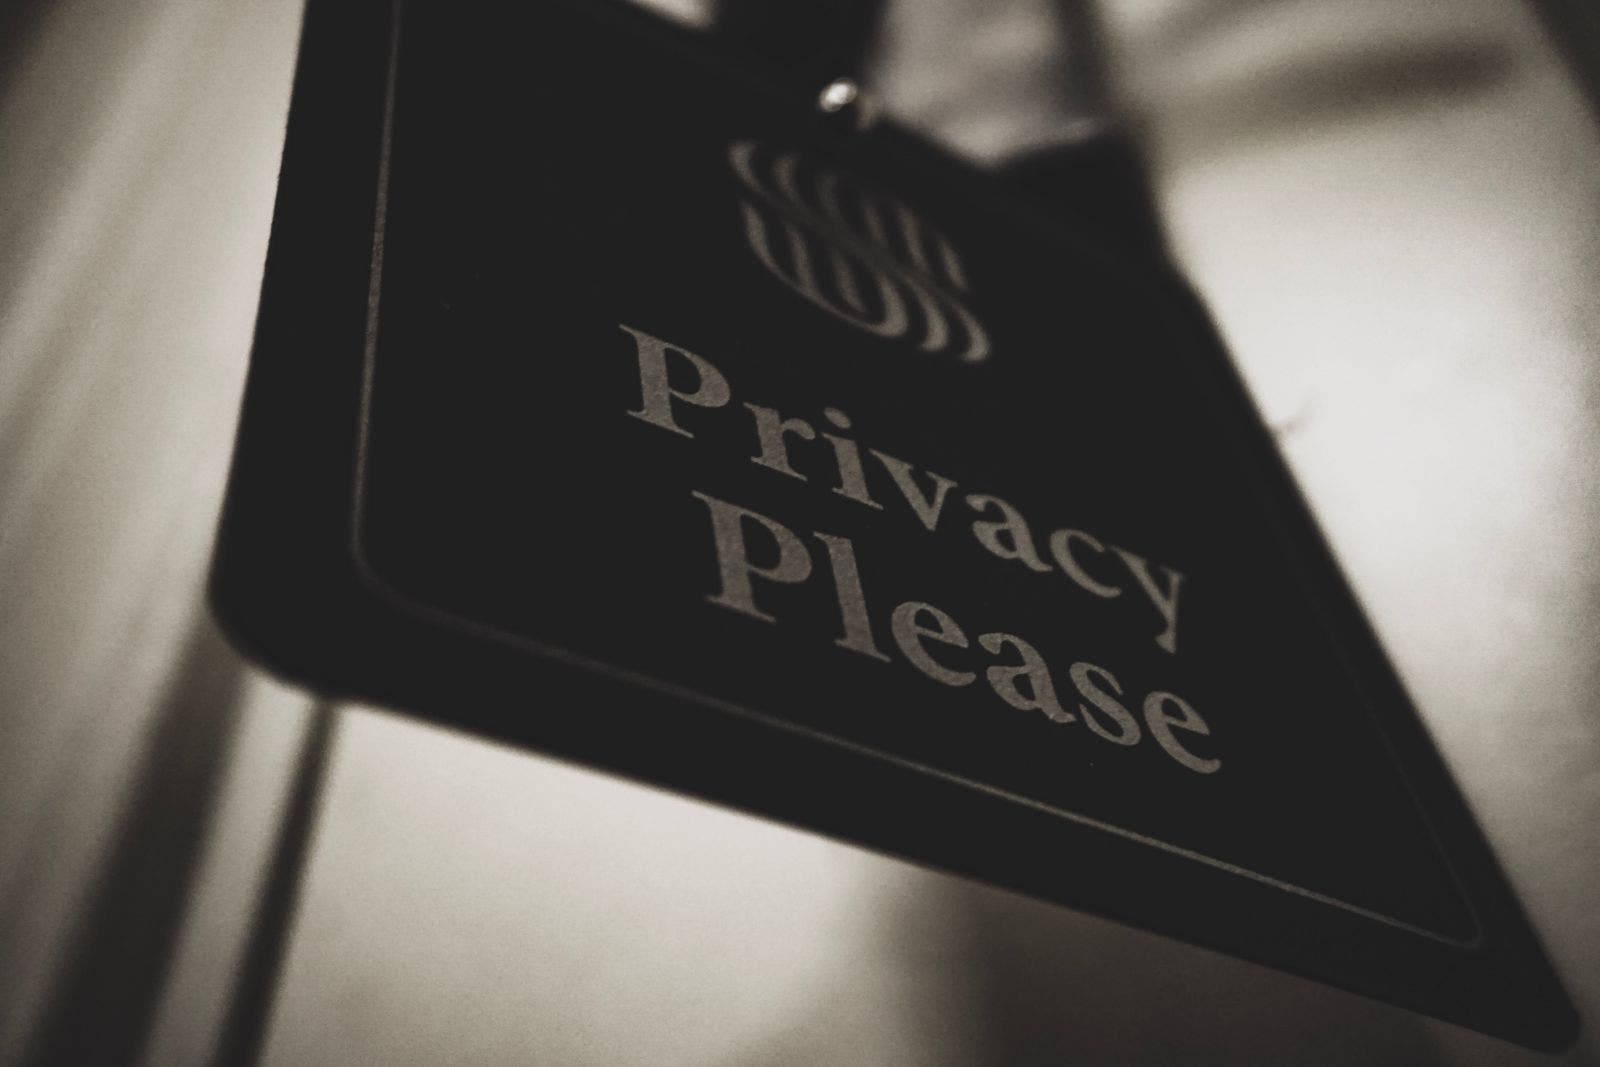 Schild mit Aufschrift "Privacy Please"